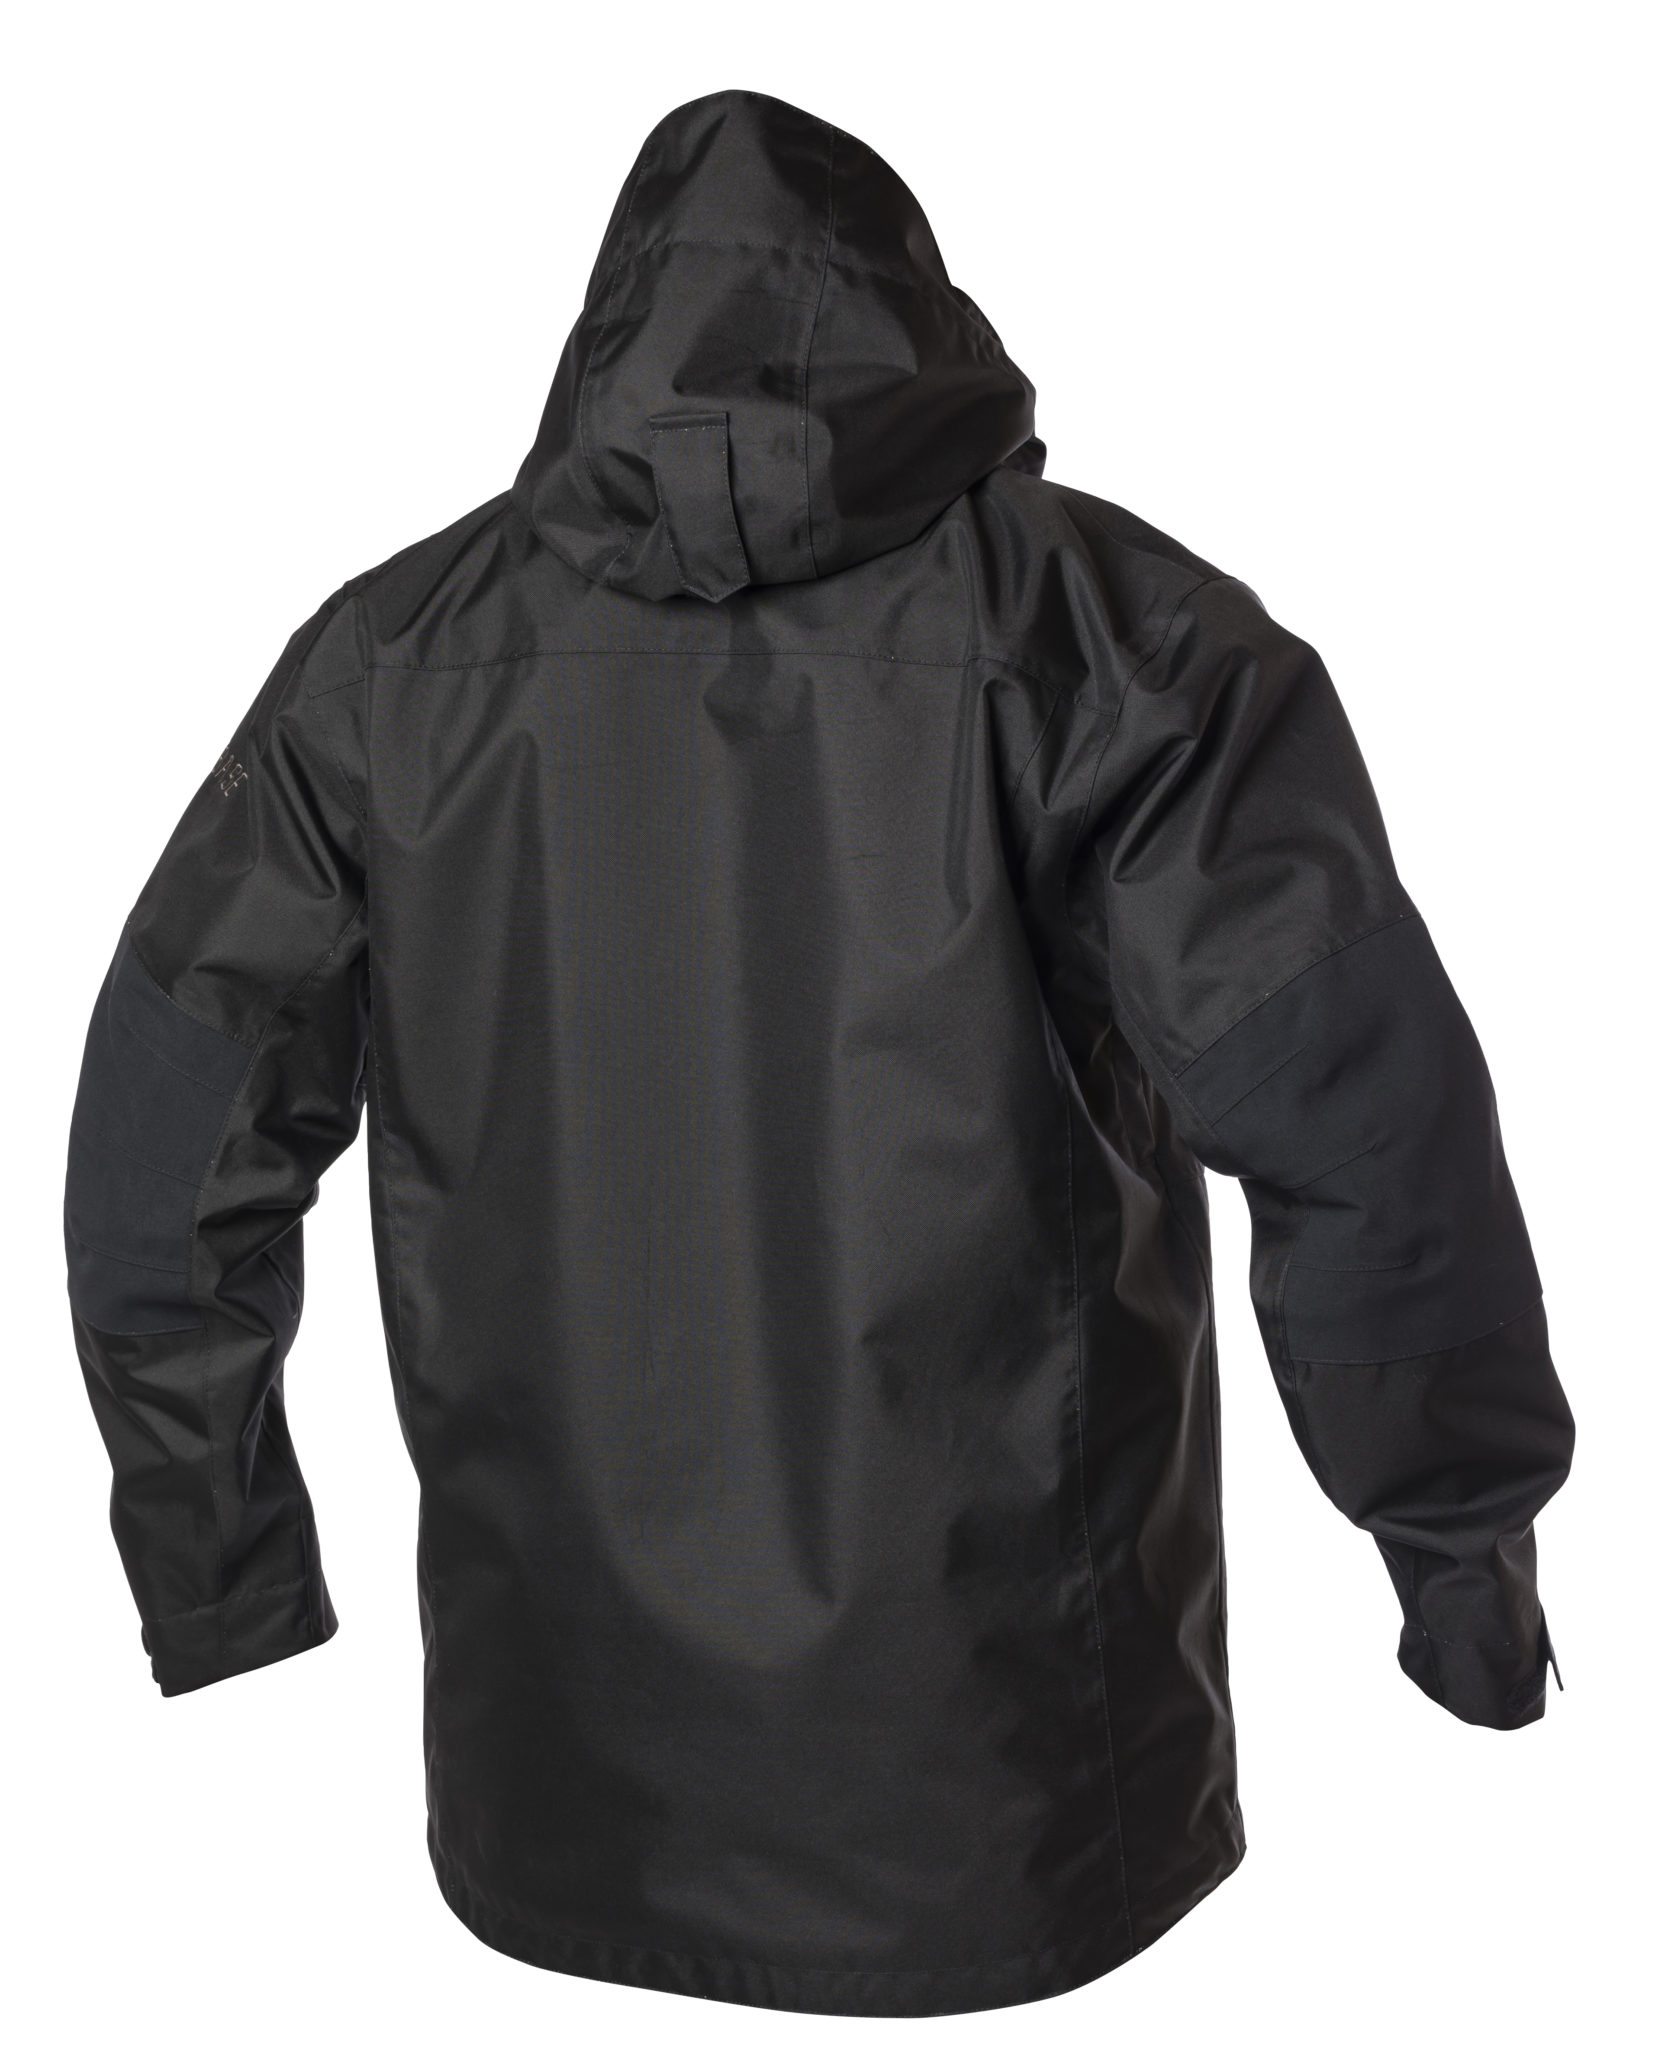 All Weather jacket EVOBASE - Den ultimative arbejdsjakke - Viking ...